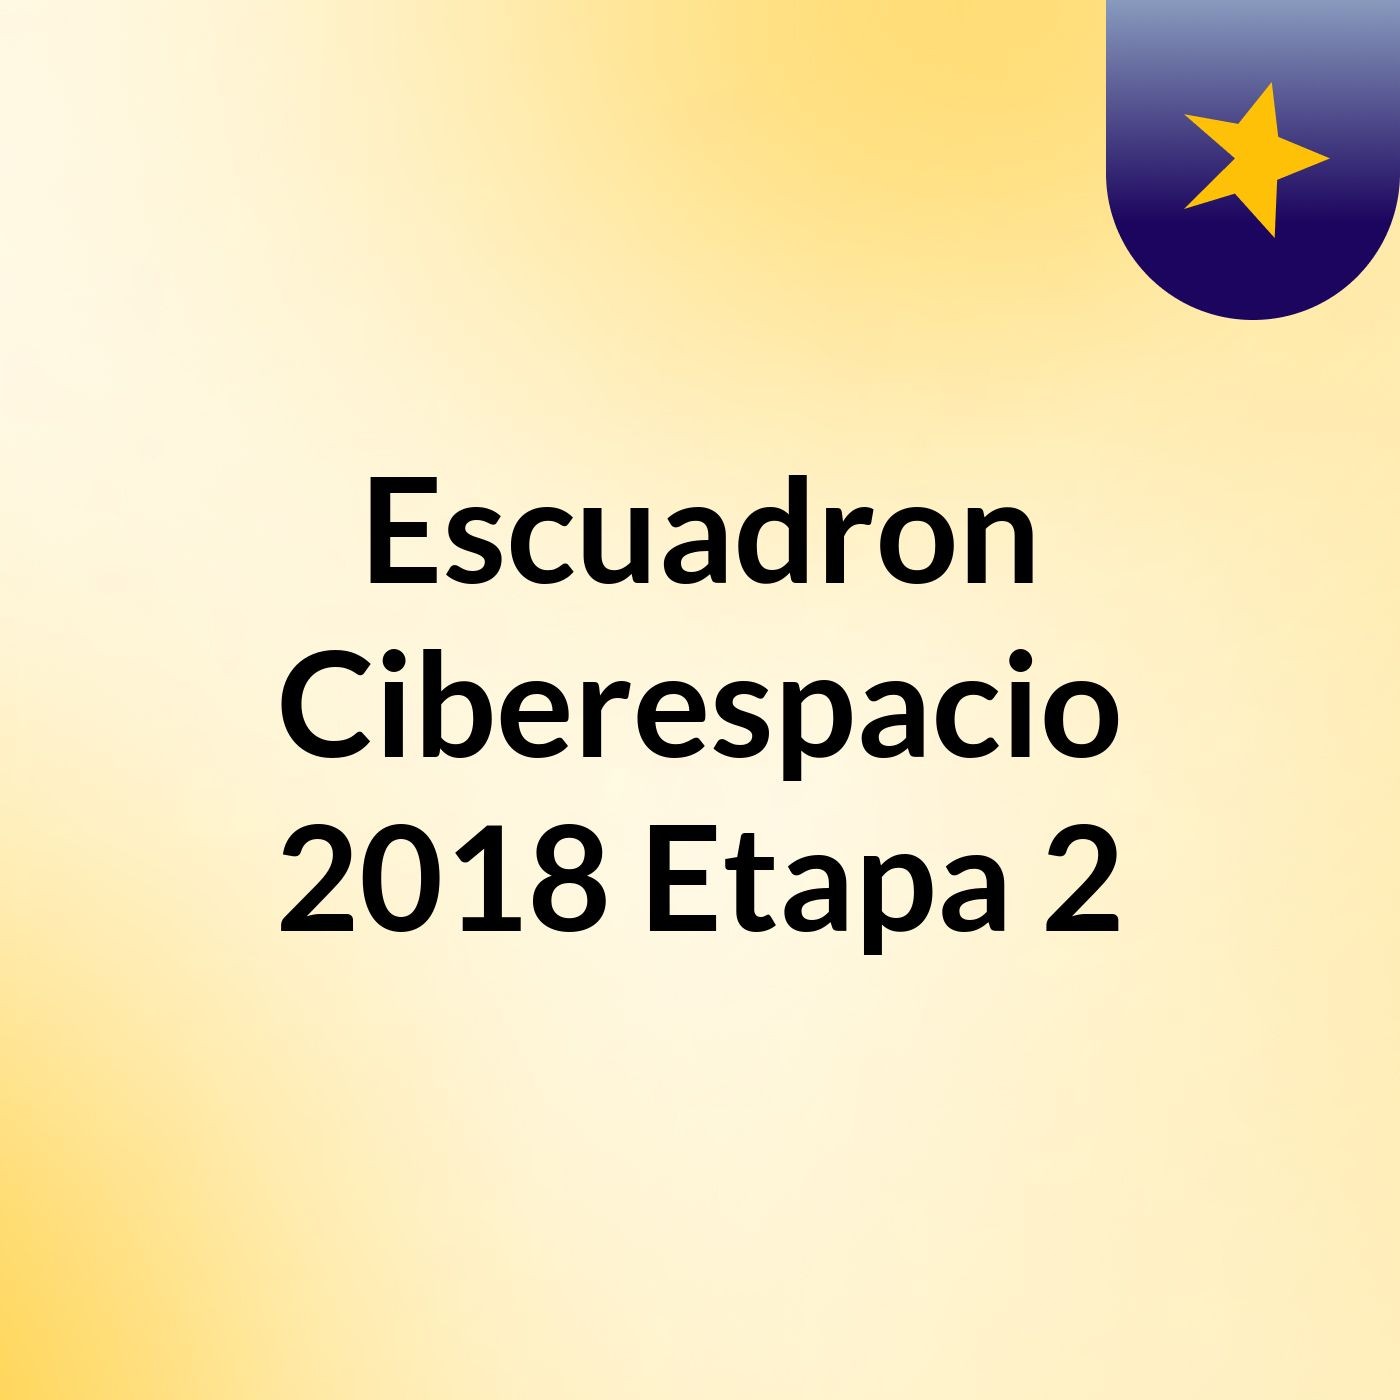 Escuadron Ciberespacio 2018 Etapa 2